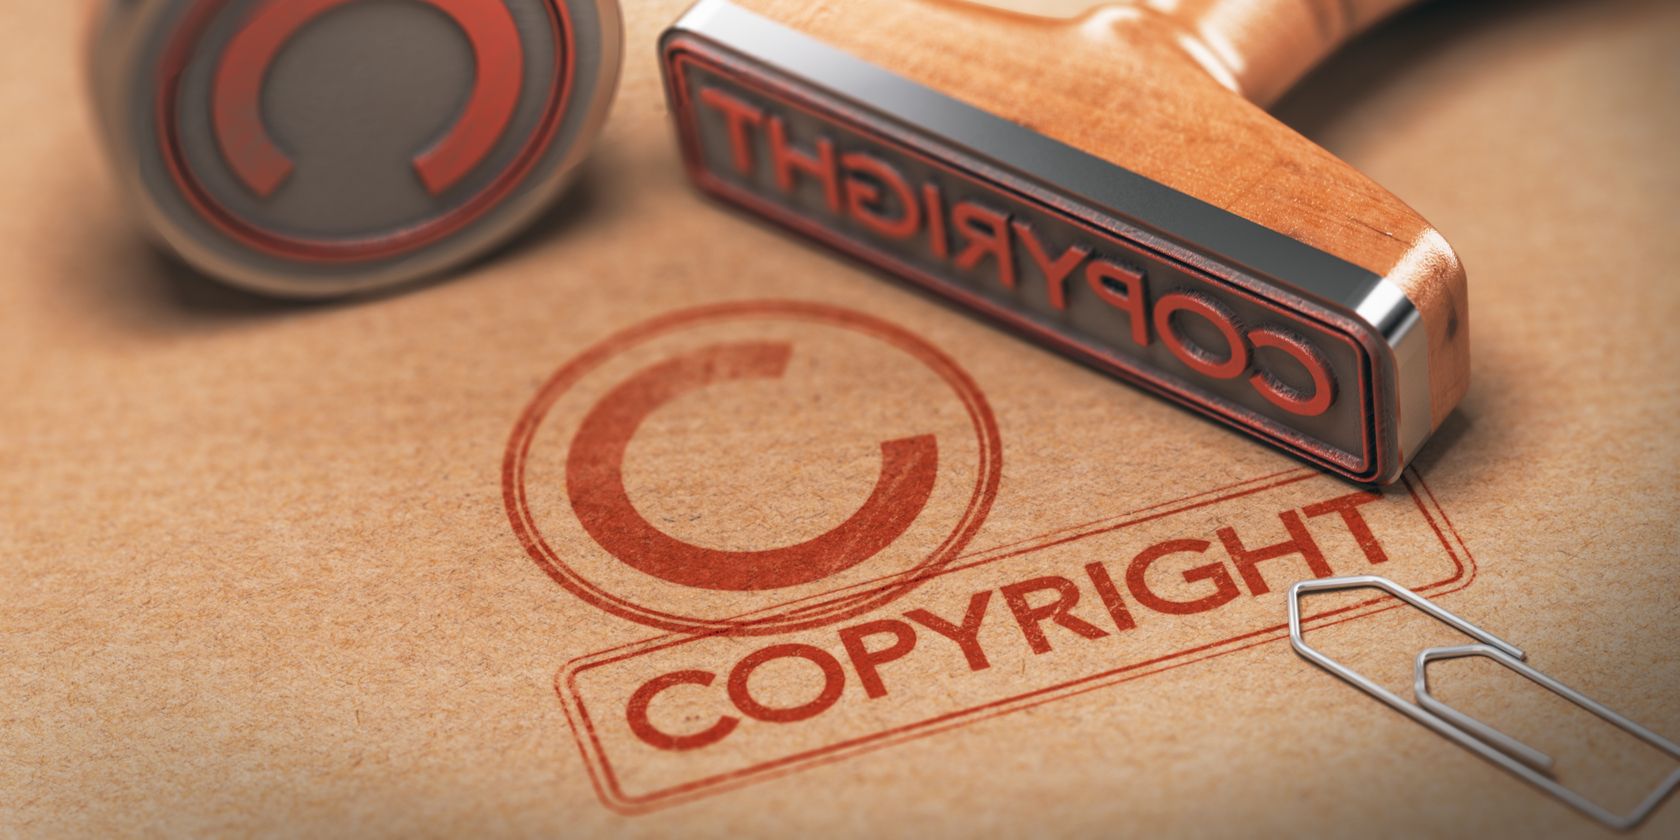 make copyright symbol on keyboard